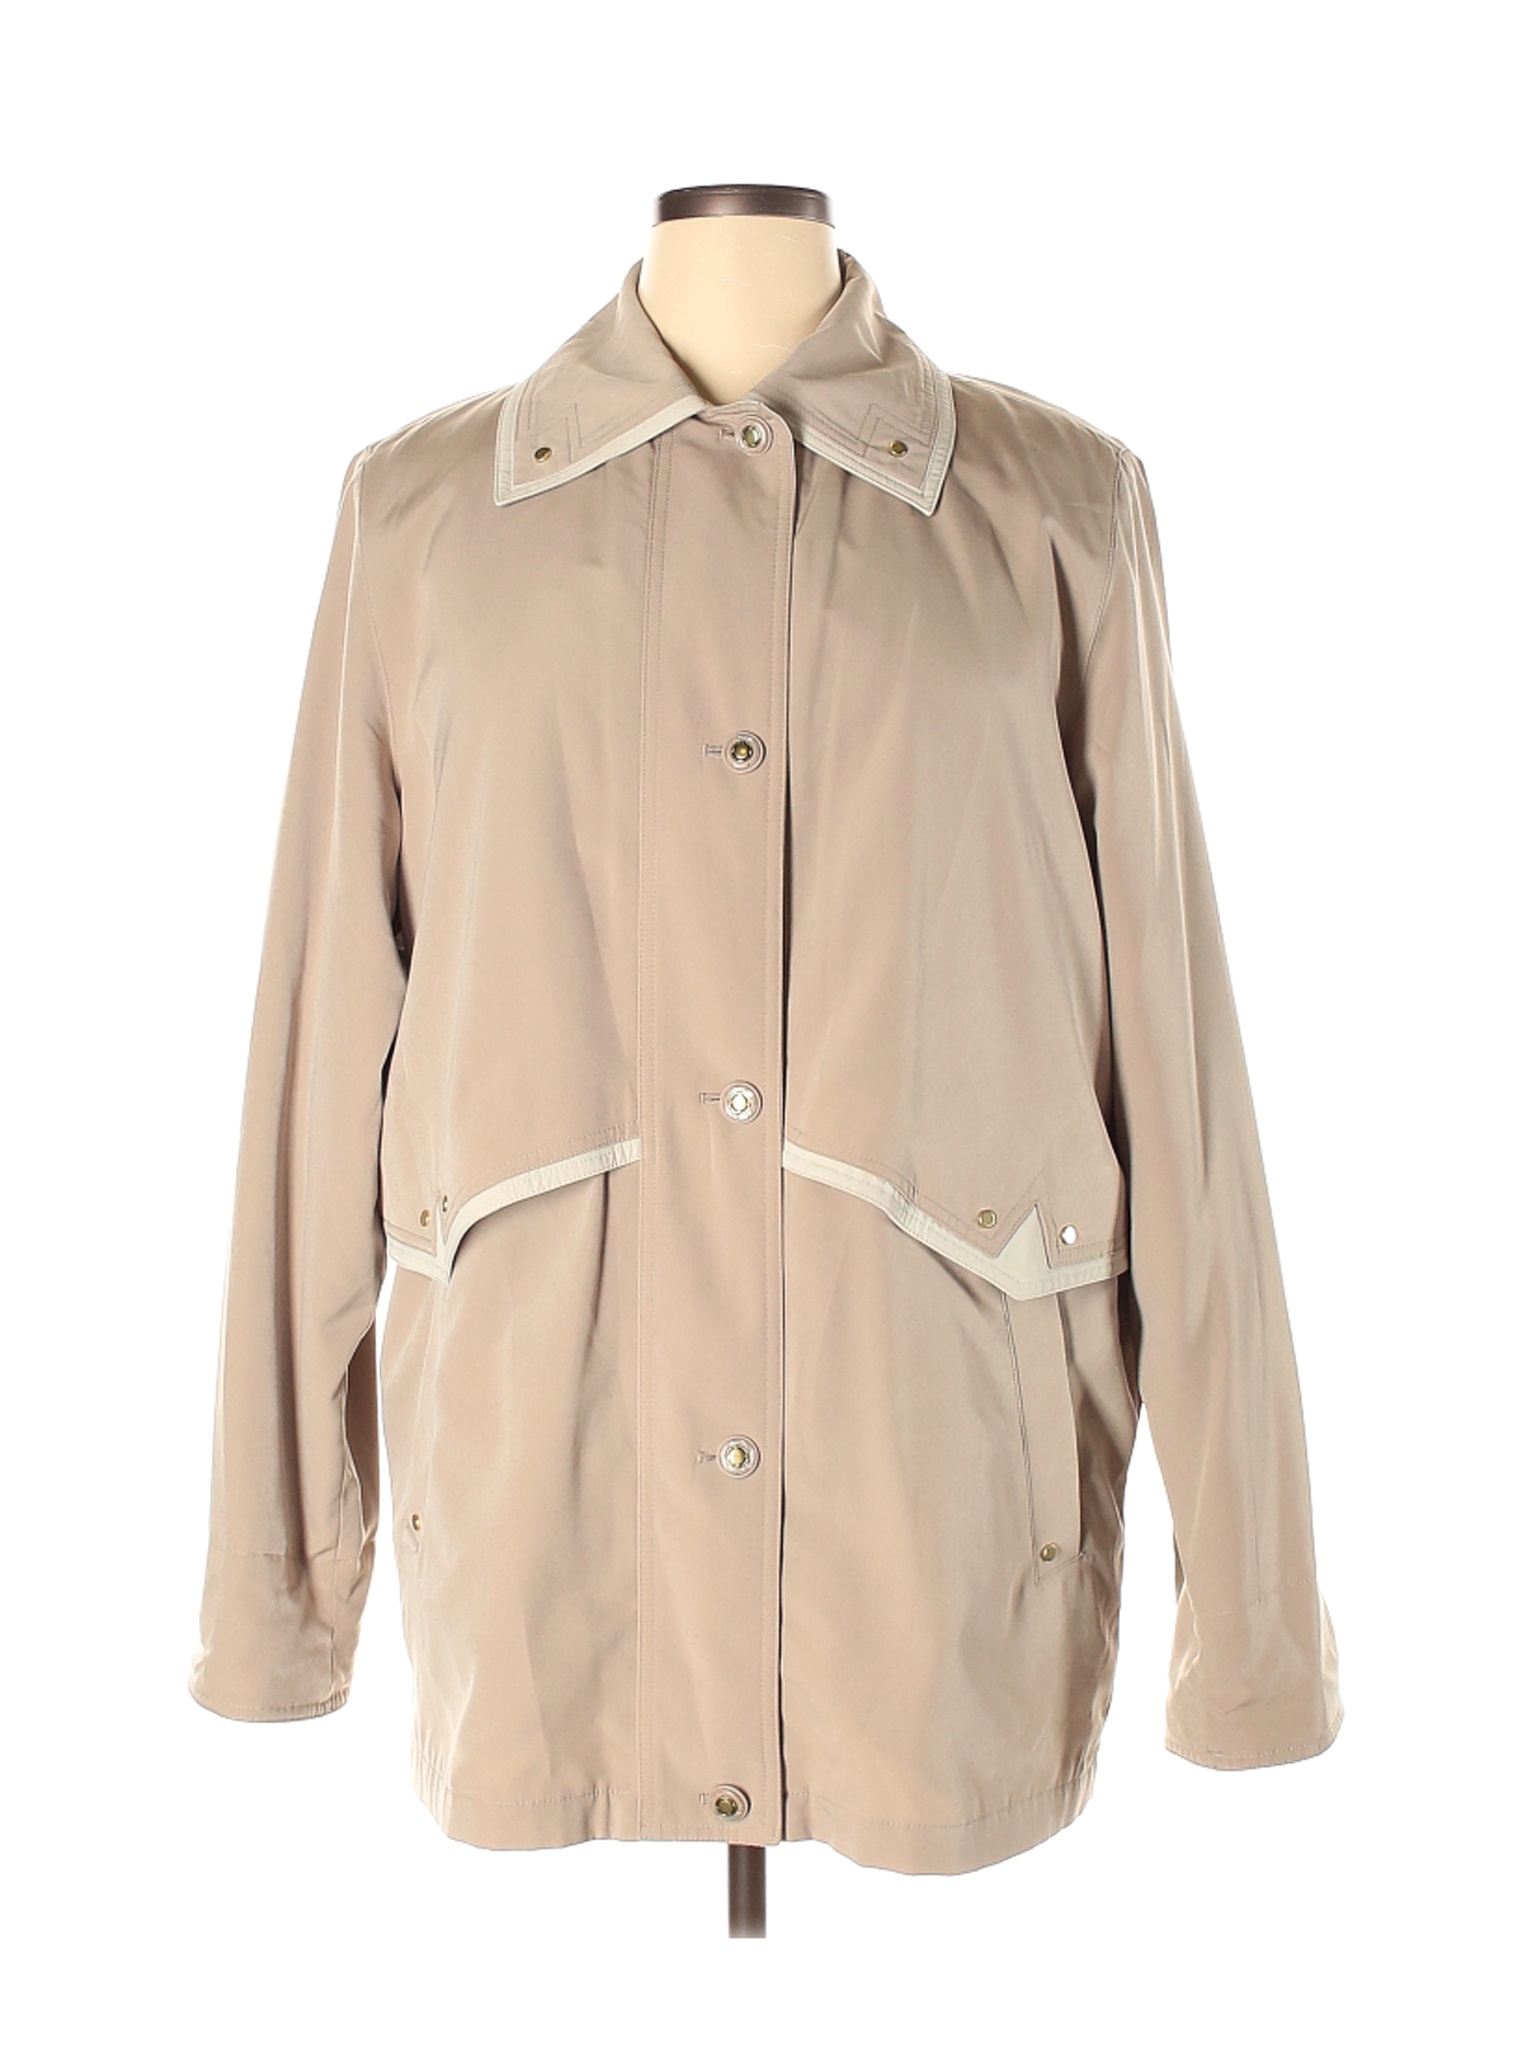 Braetan Women Ivory Jacket XL | eBay